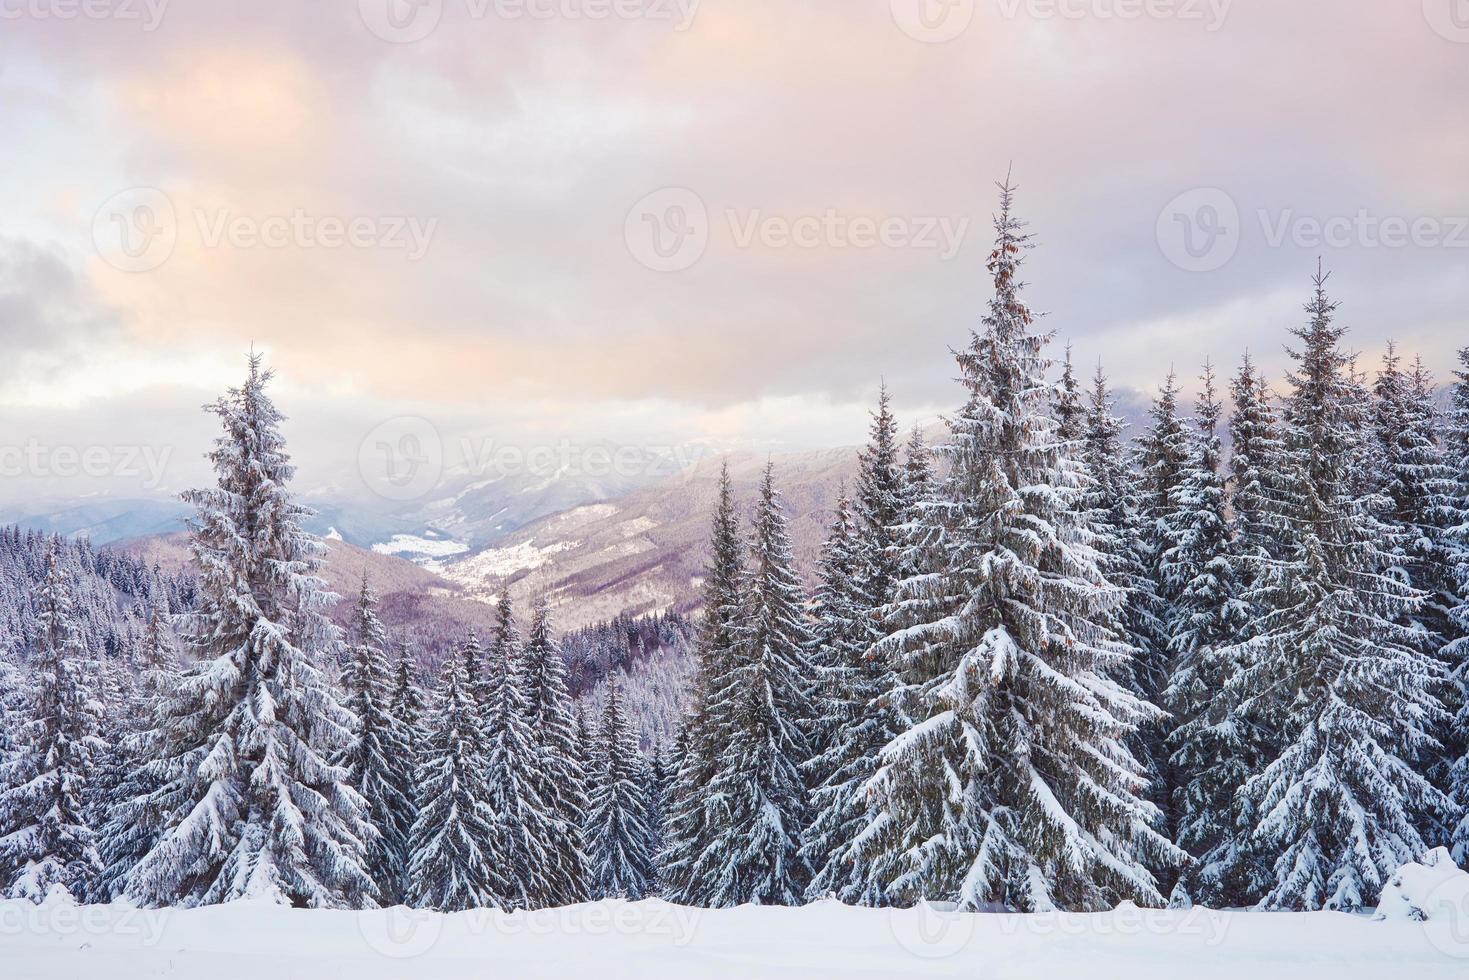 épinettes blanches majestueuses qui brillent par la lumière du soleil. scène hivernale pittoresque et magnifique. emplacement place parc national des carpates, ukraine, europe. station de ski des alpes photo